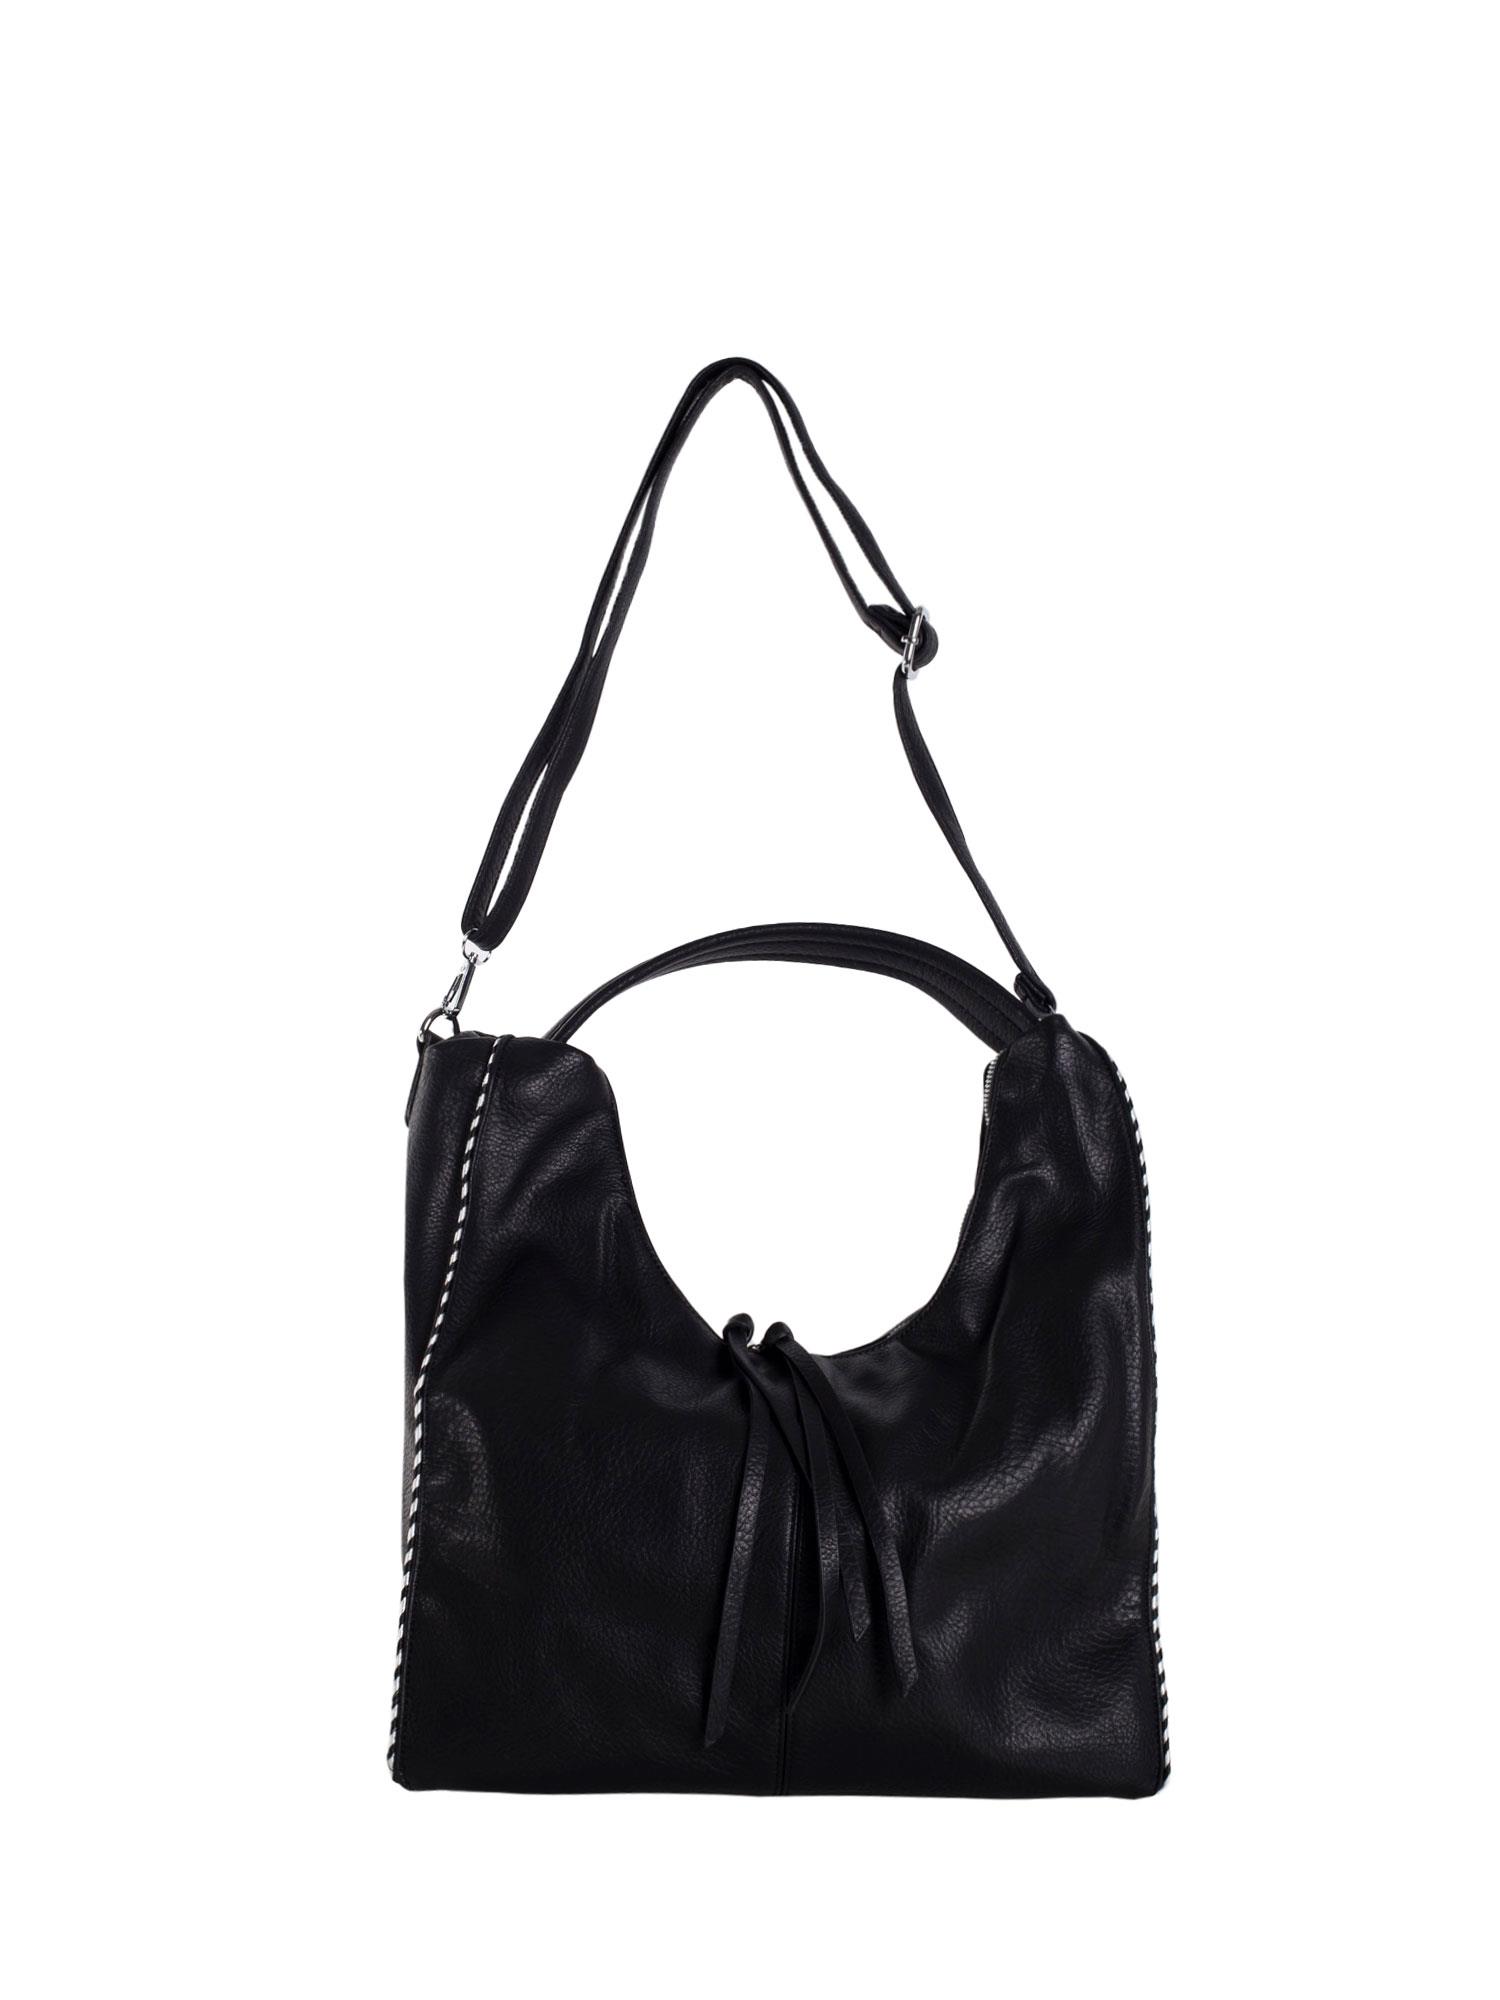 Black city shoulder bag made of eco-leather